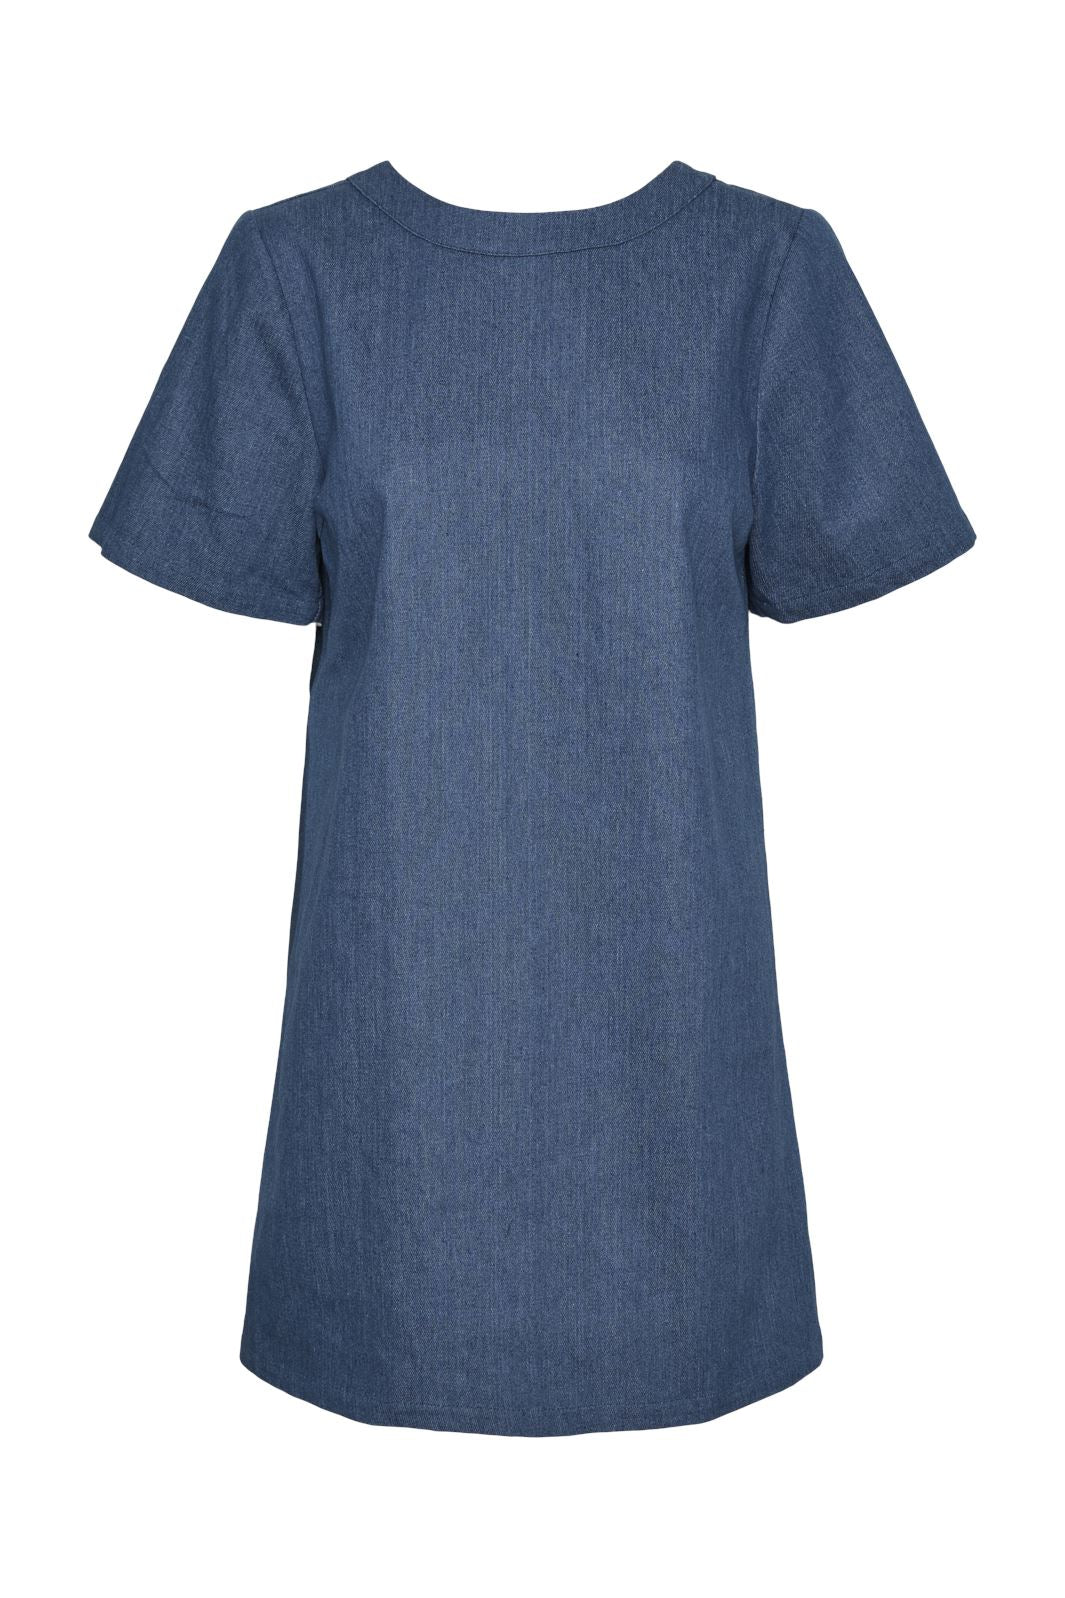 Pieces - Pcdove Ss O-Neck Bow Short Dress - 4679700 Medium Blue Denim